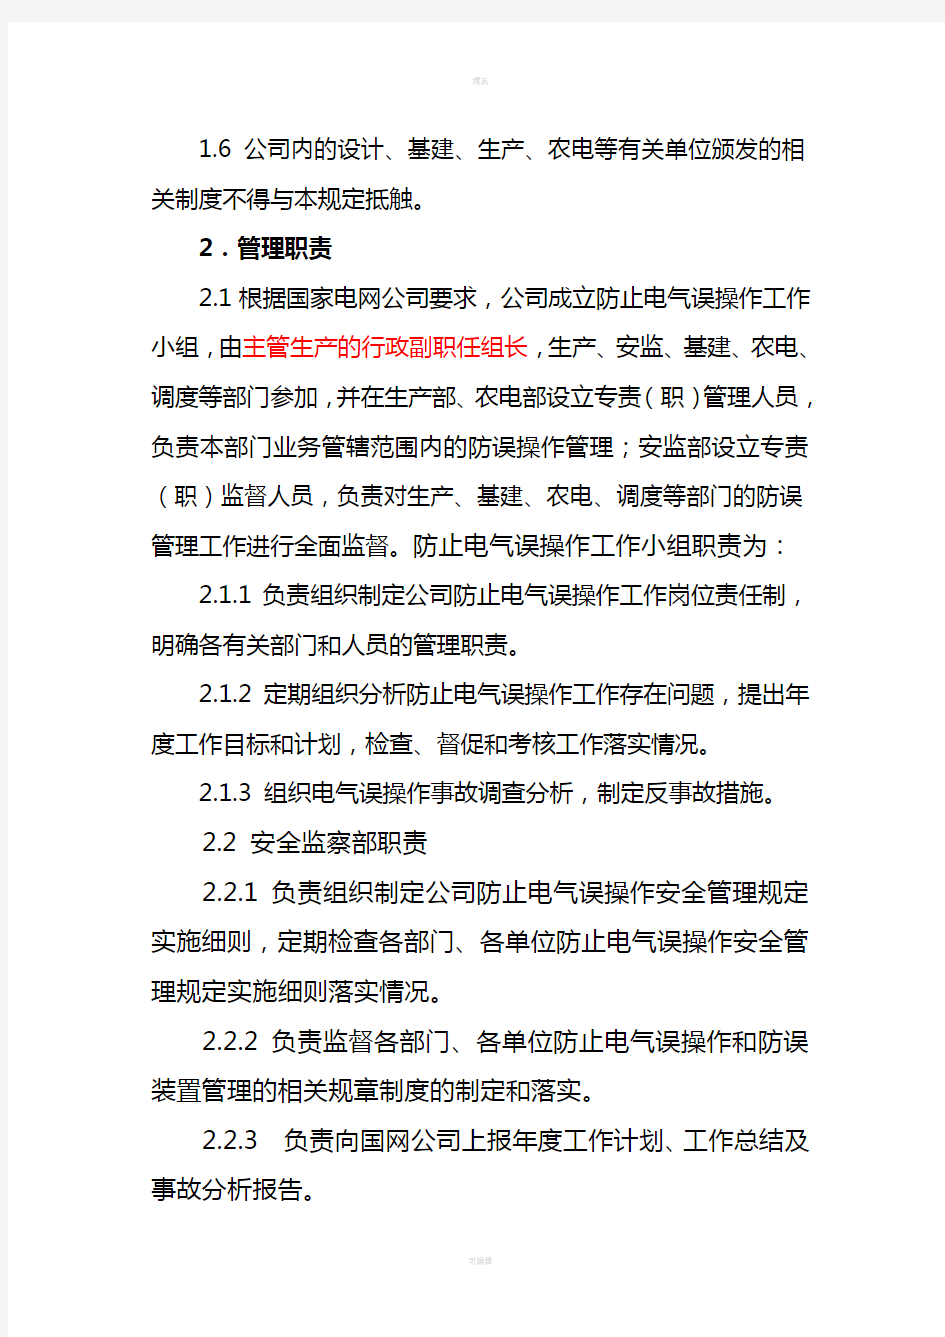 浙江省电力公司防止电气误操作安全管理规定实施细则(发文)